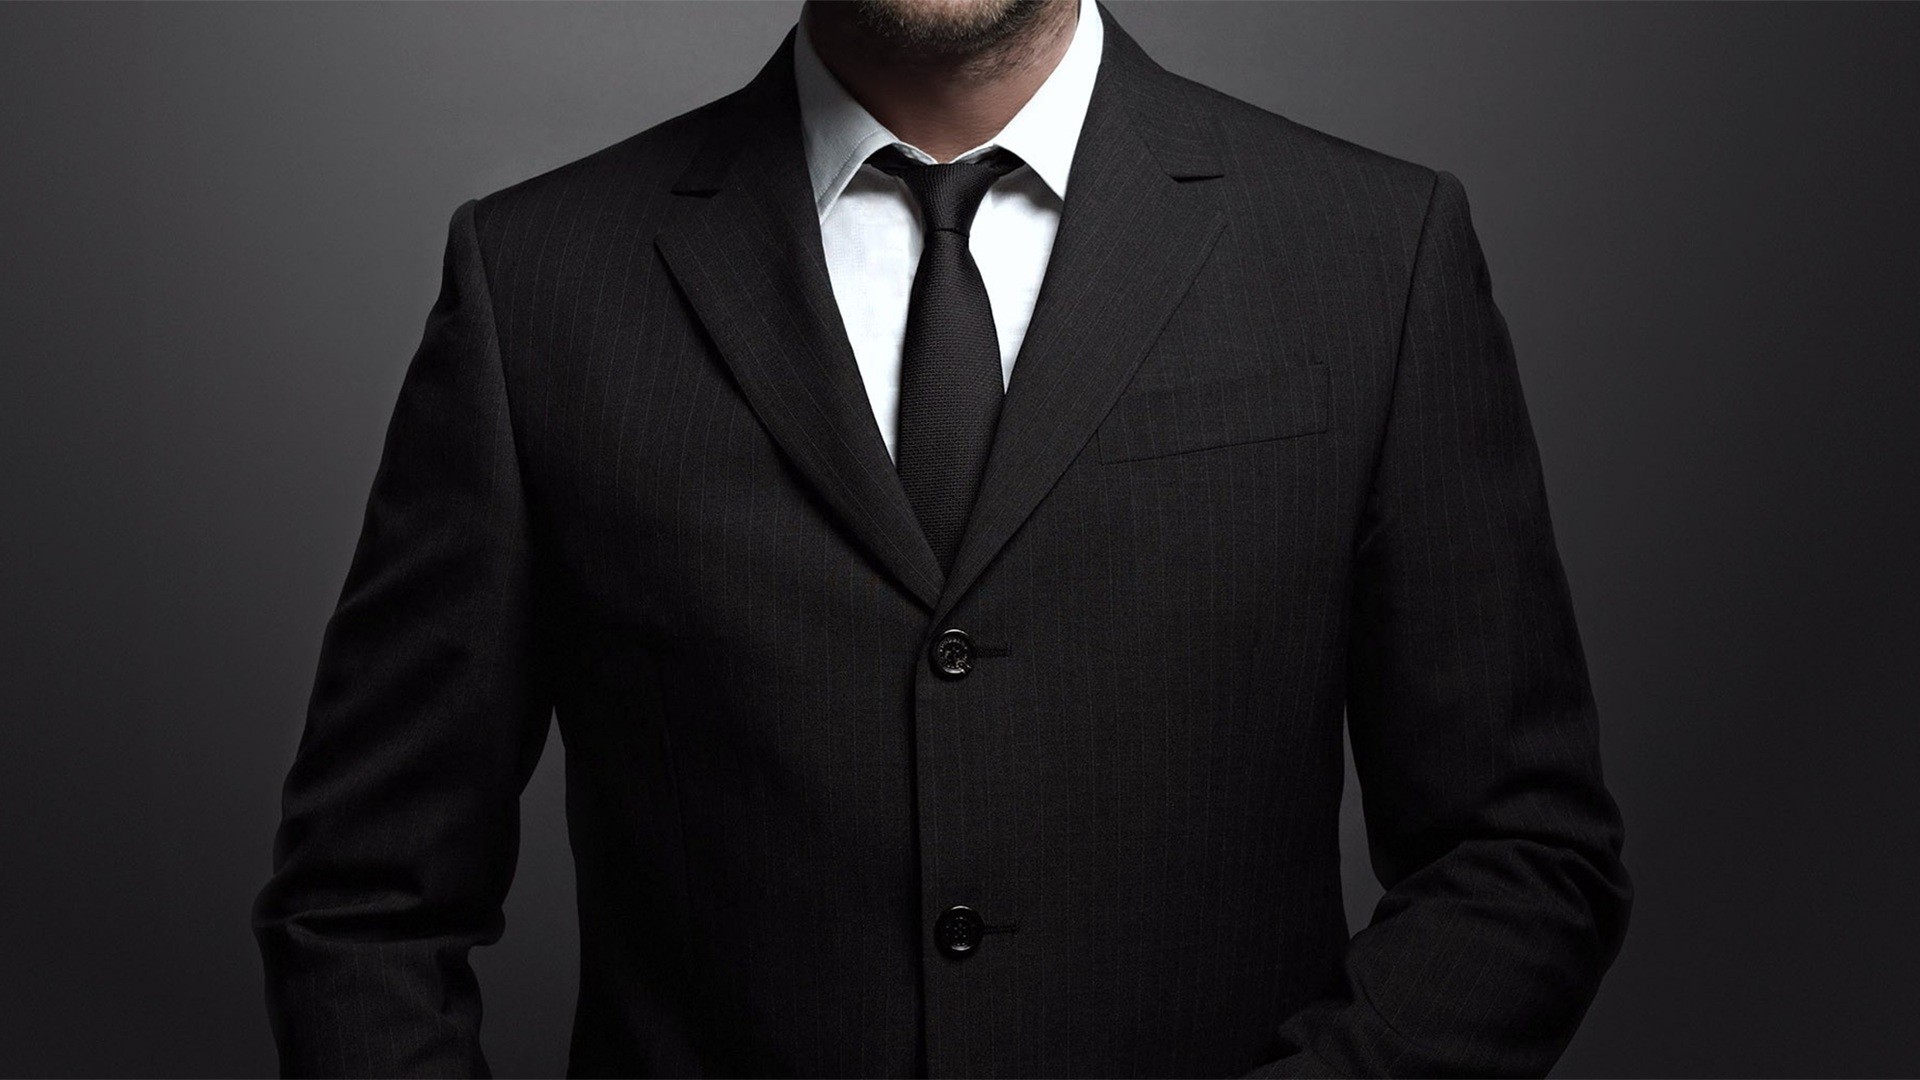 People 1920x1080 men suits tie studio men indoors gray background simple background